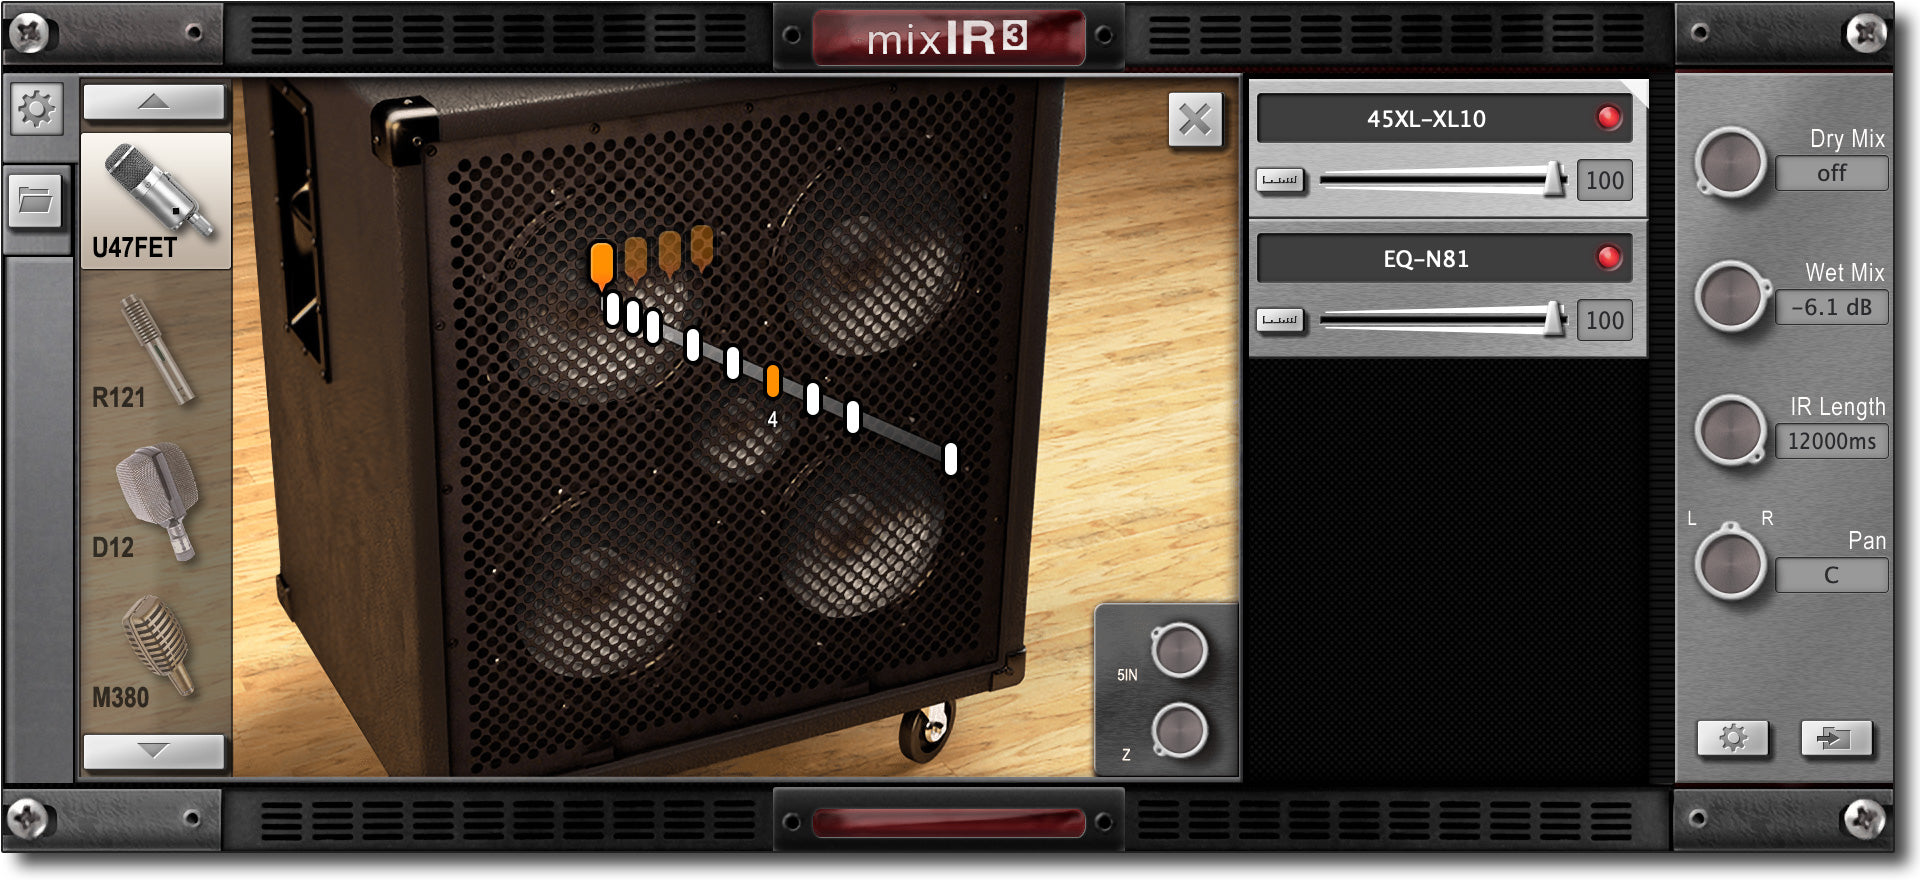 mixIR³ 45XL-XL10 cabinet module